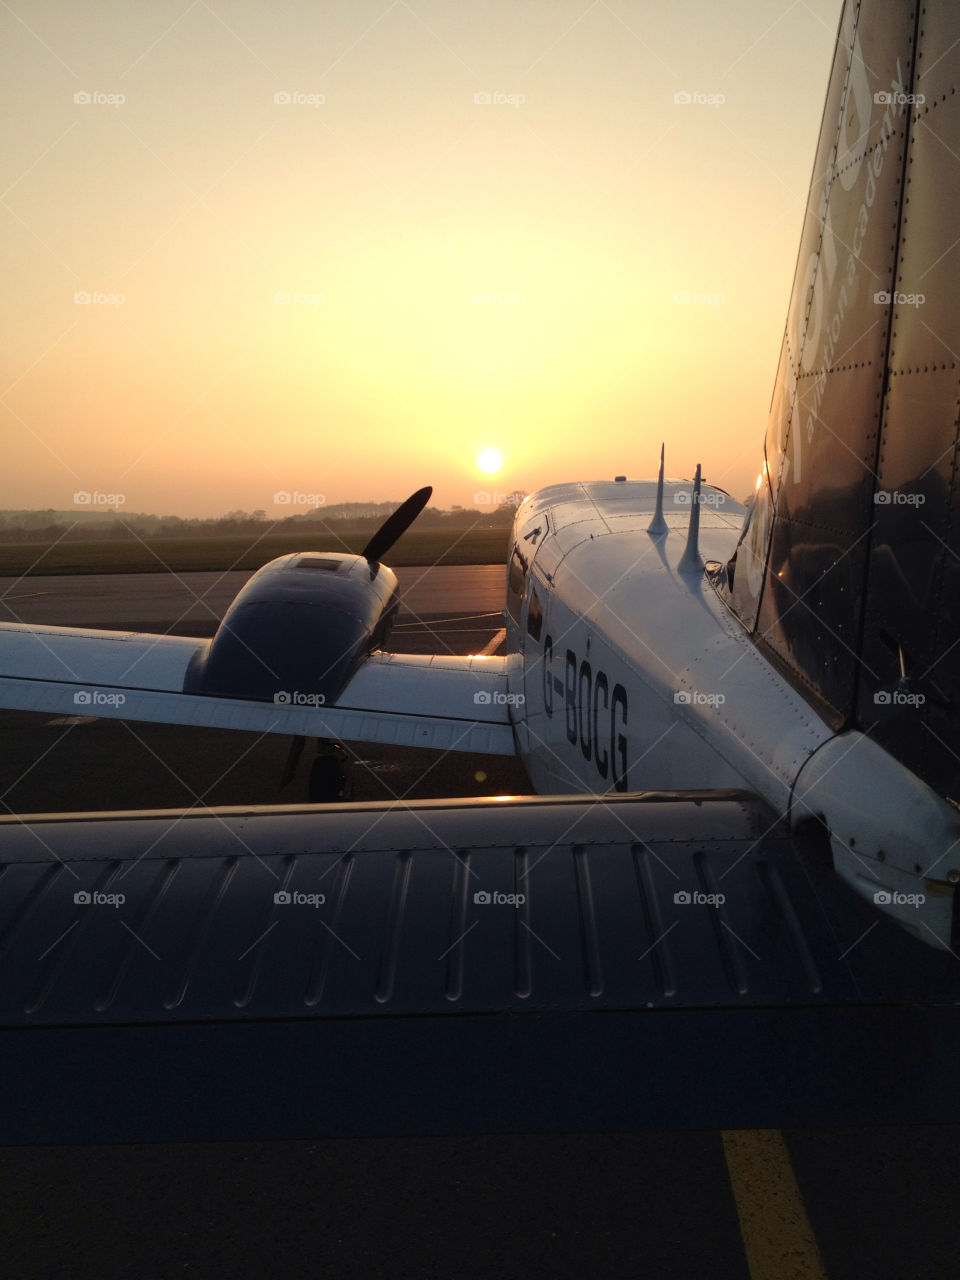 sunset united kingdom plane aircraft by lukemarazzi